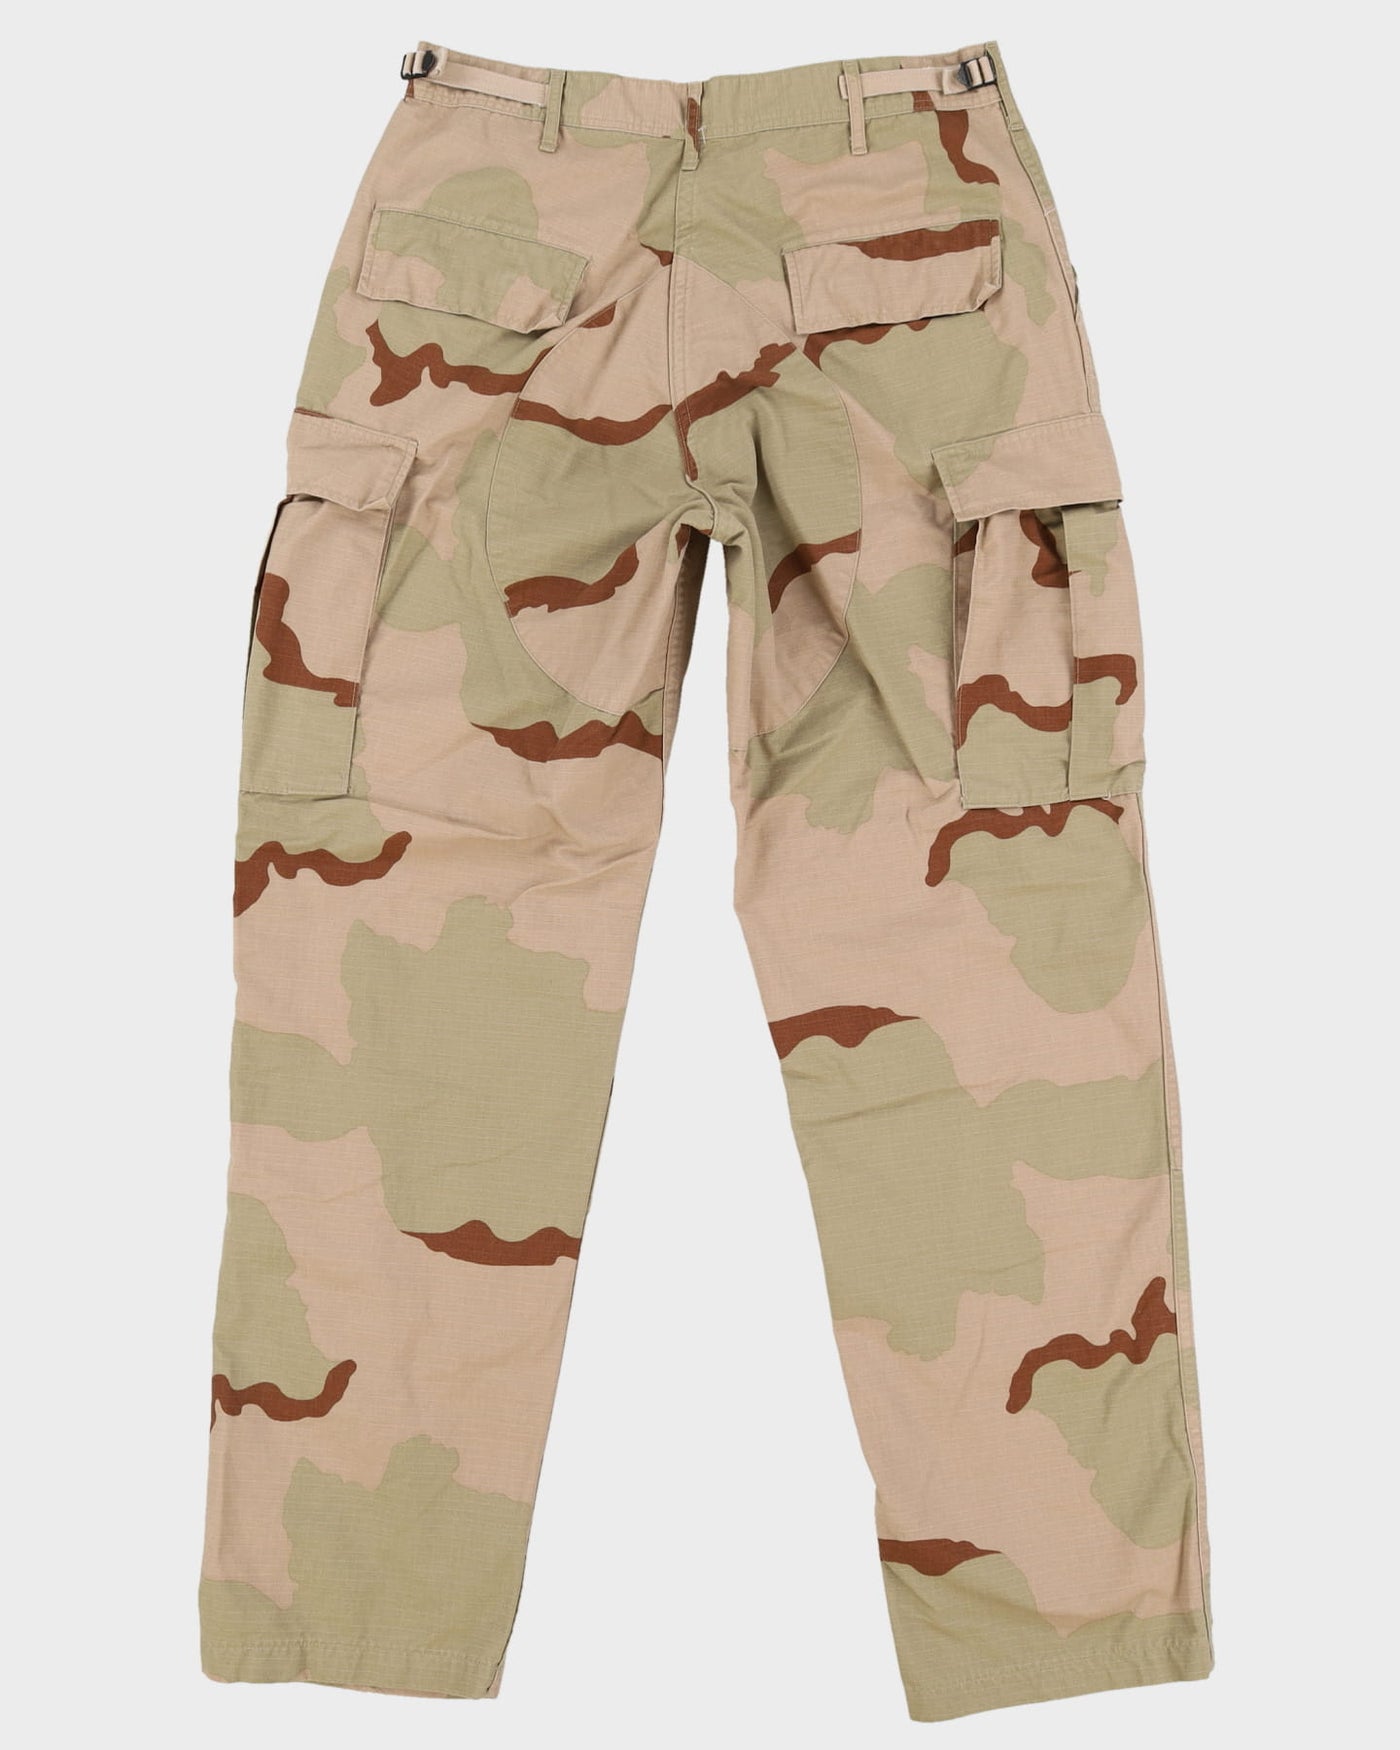 Vintage 90s US Military Desert Camo Combat Trousers - W32 L34